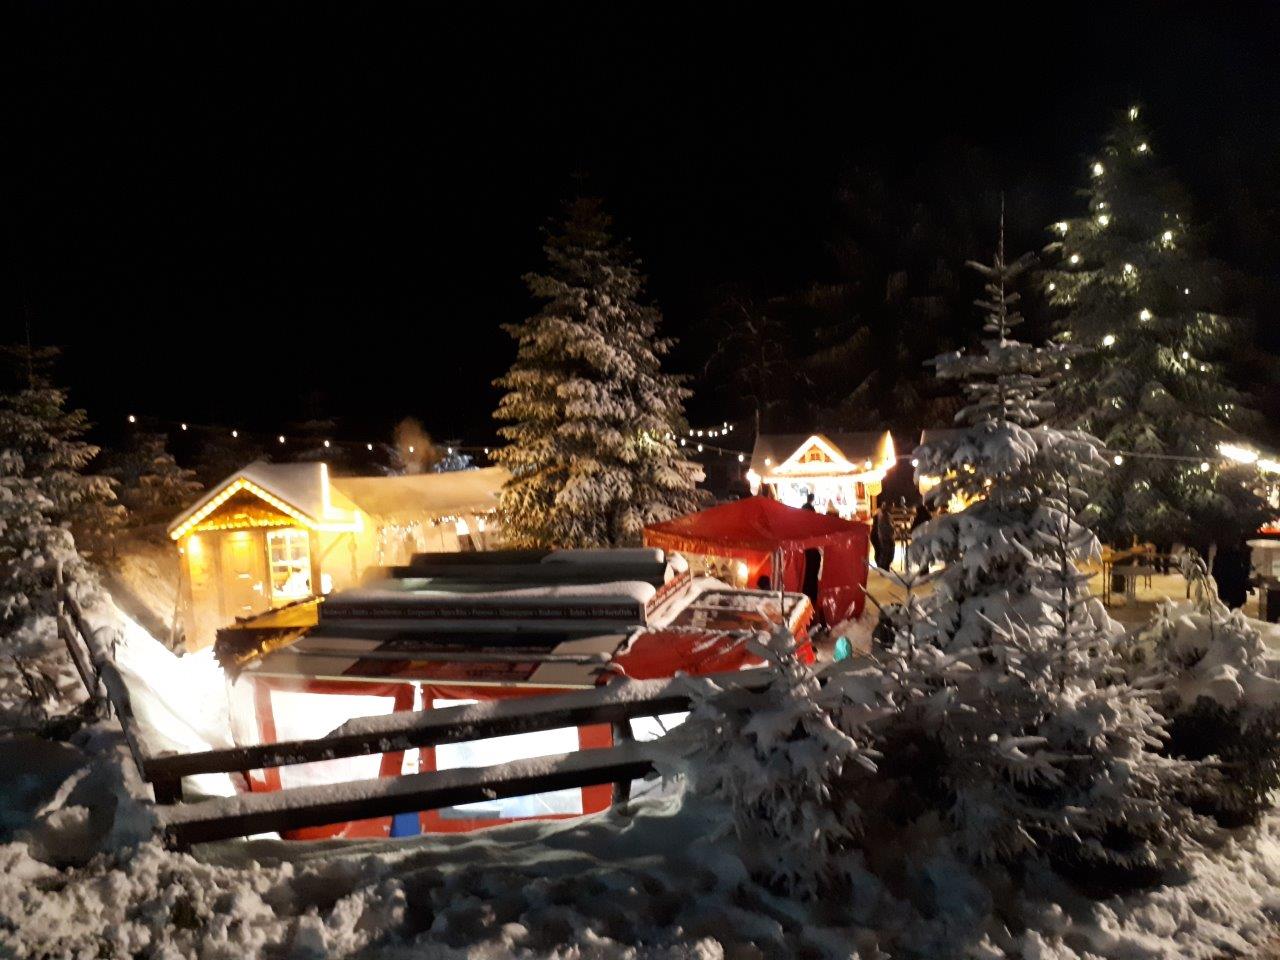 Aufnahme von den Ständen auf dem Weihnachtsmarkt umgeben von schneebedeckten Tannen